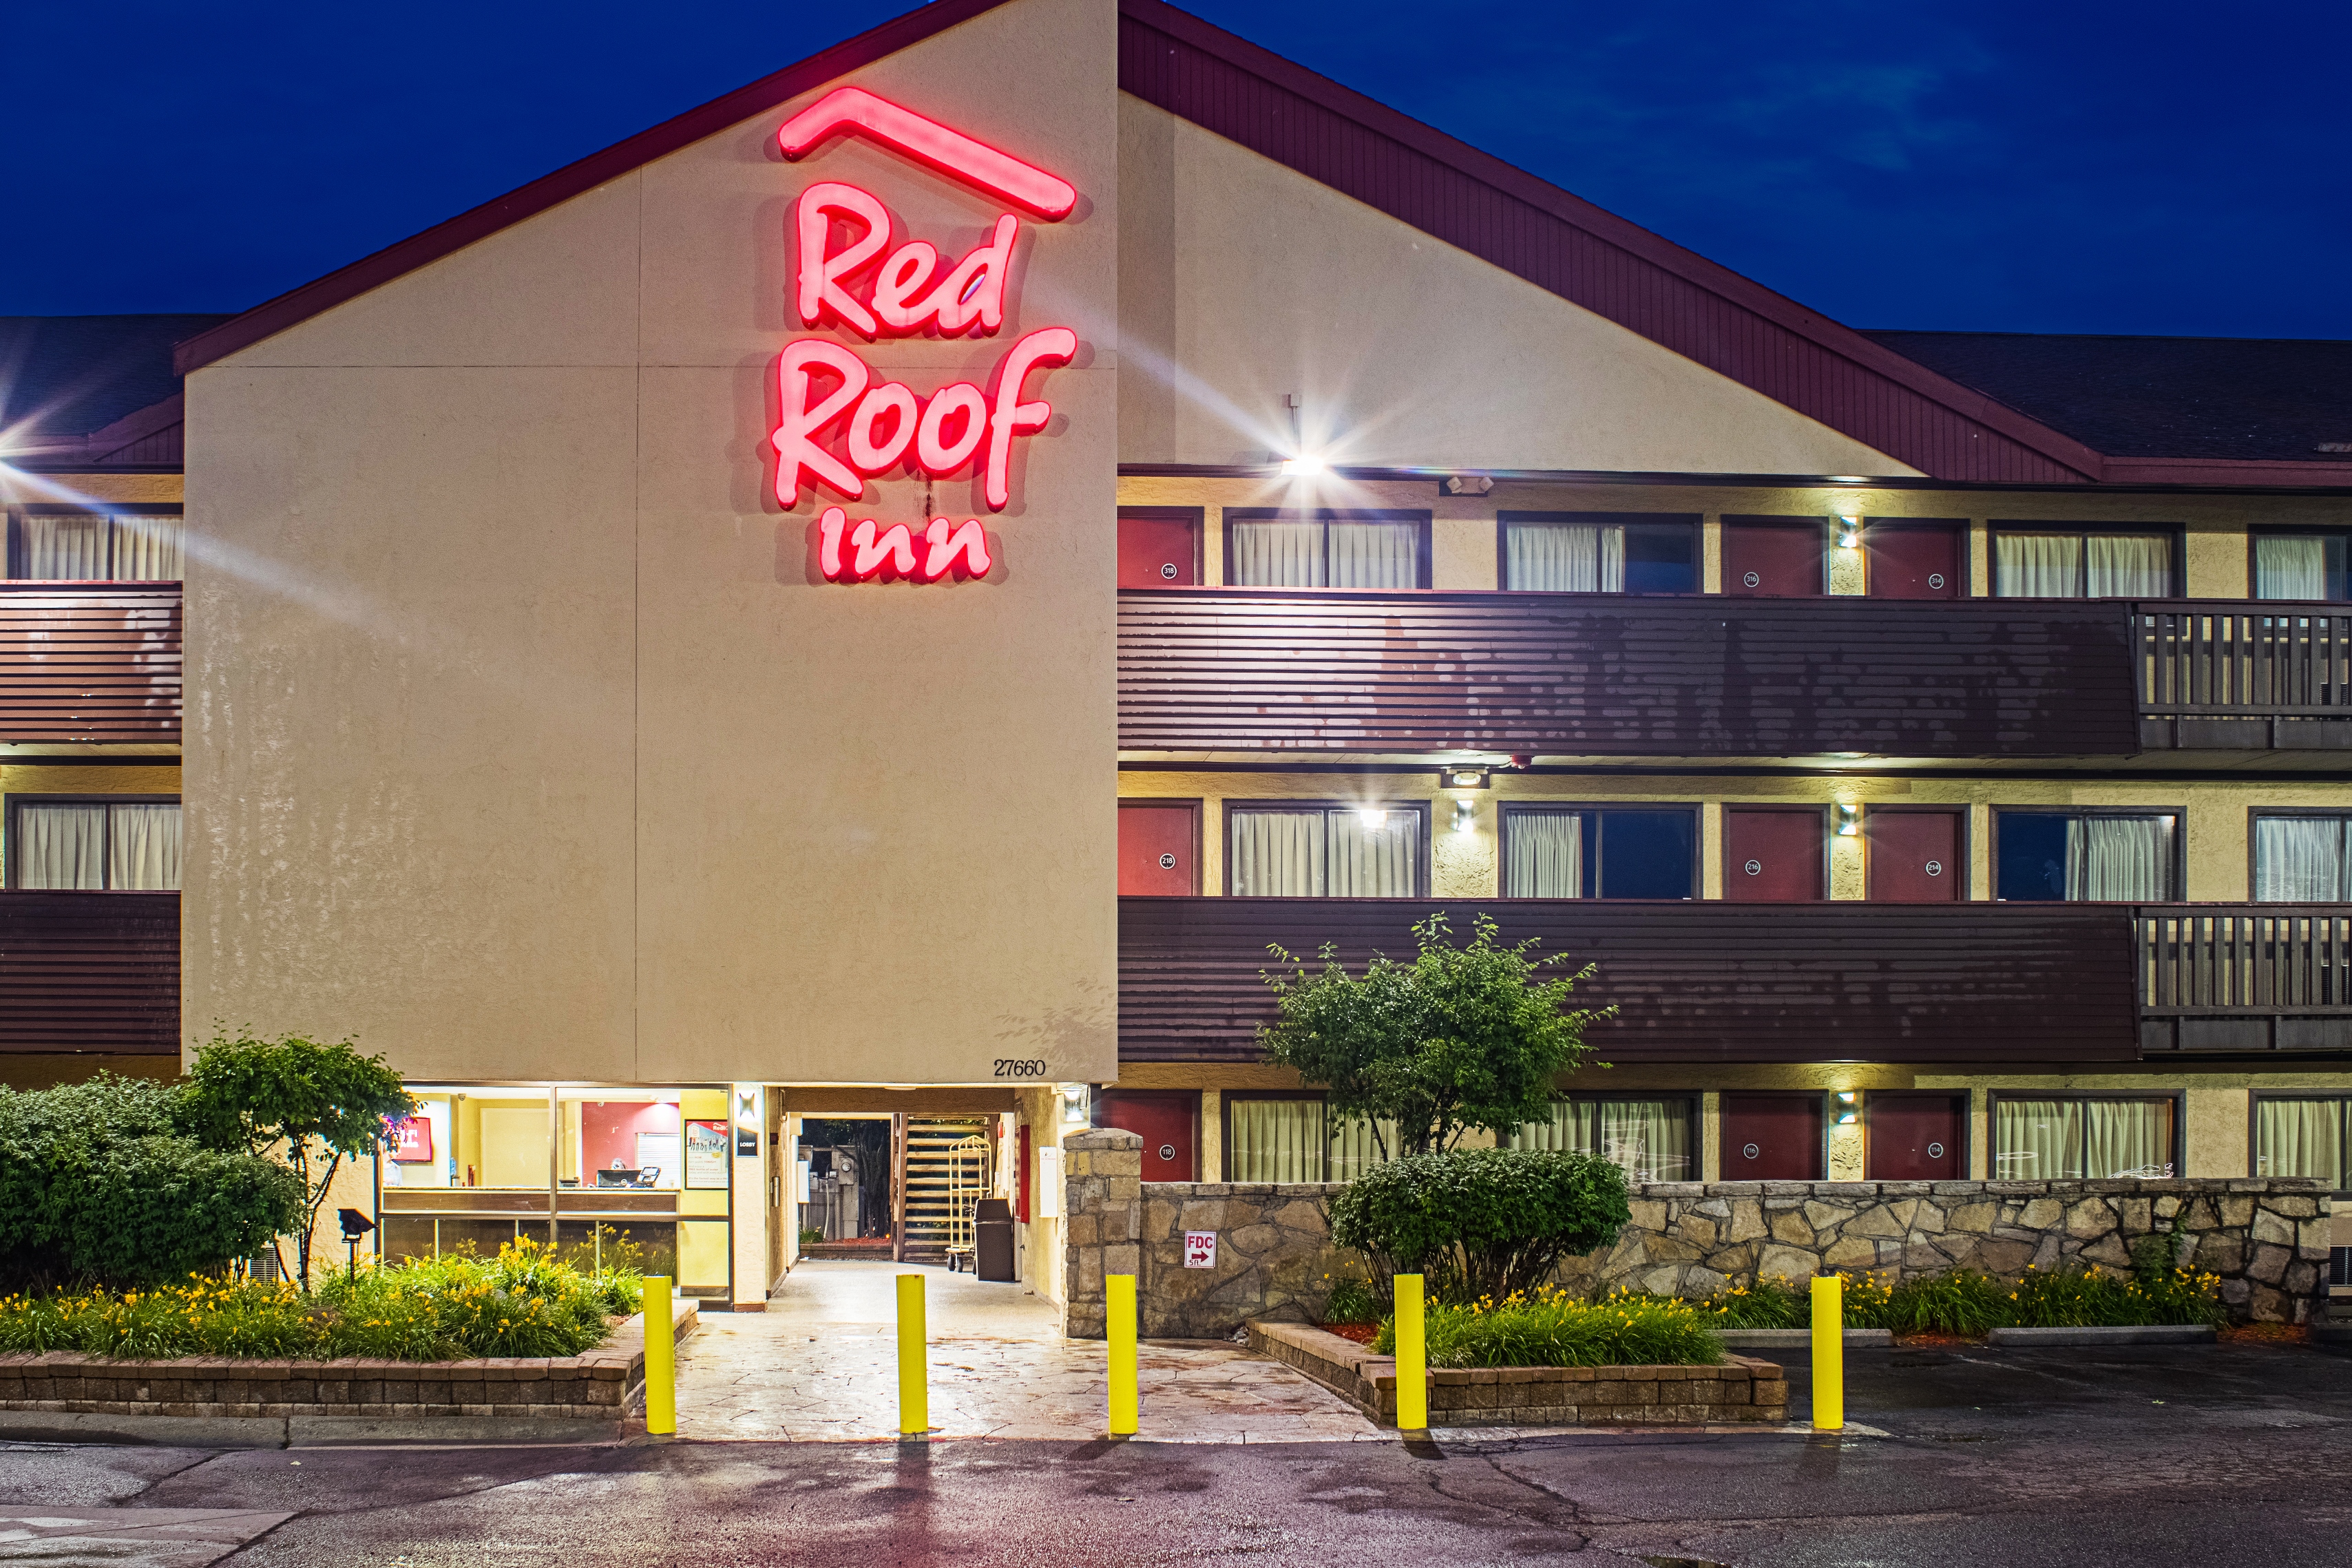 Red Roof Inn Detroit - Southfield Southfield (248)353-7200